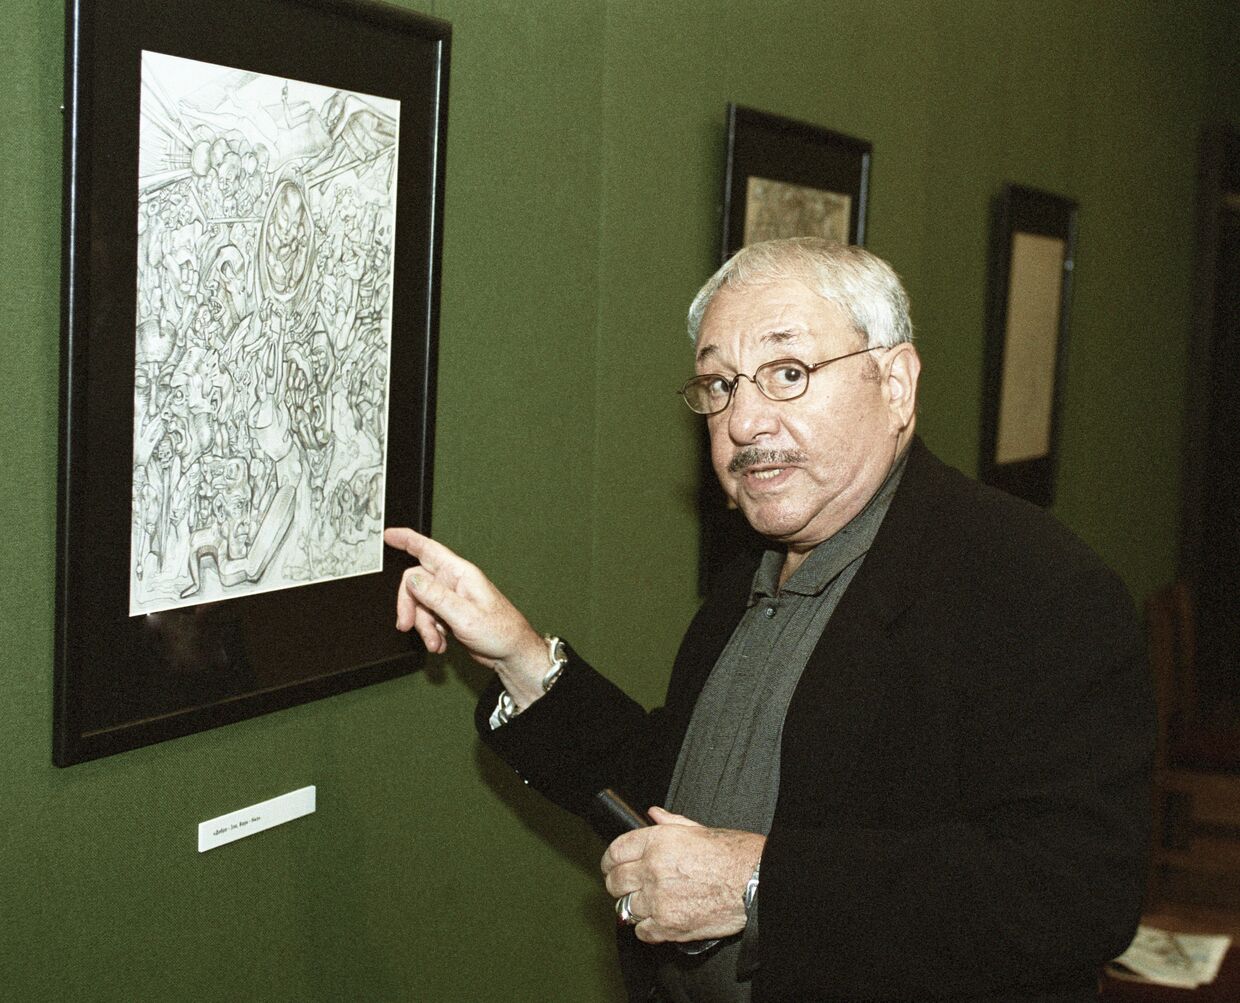 Скульптор и график Эрнст Неизвестный на выставке своих работ в Третьяковской галерее в Москве